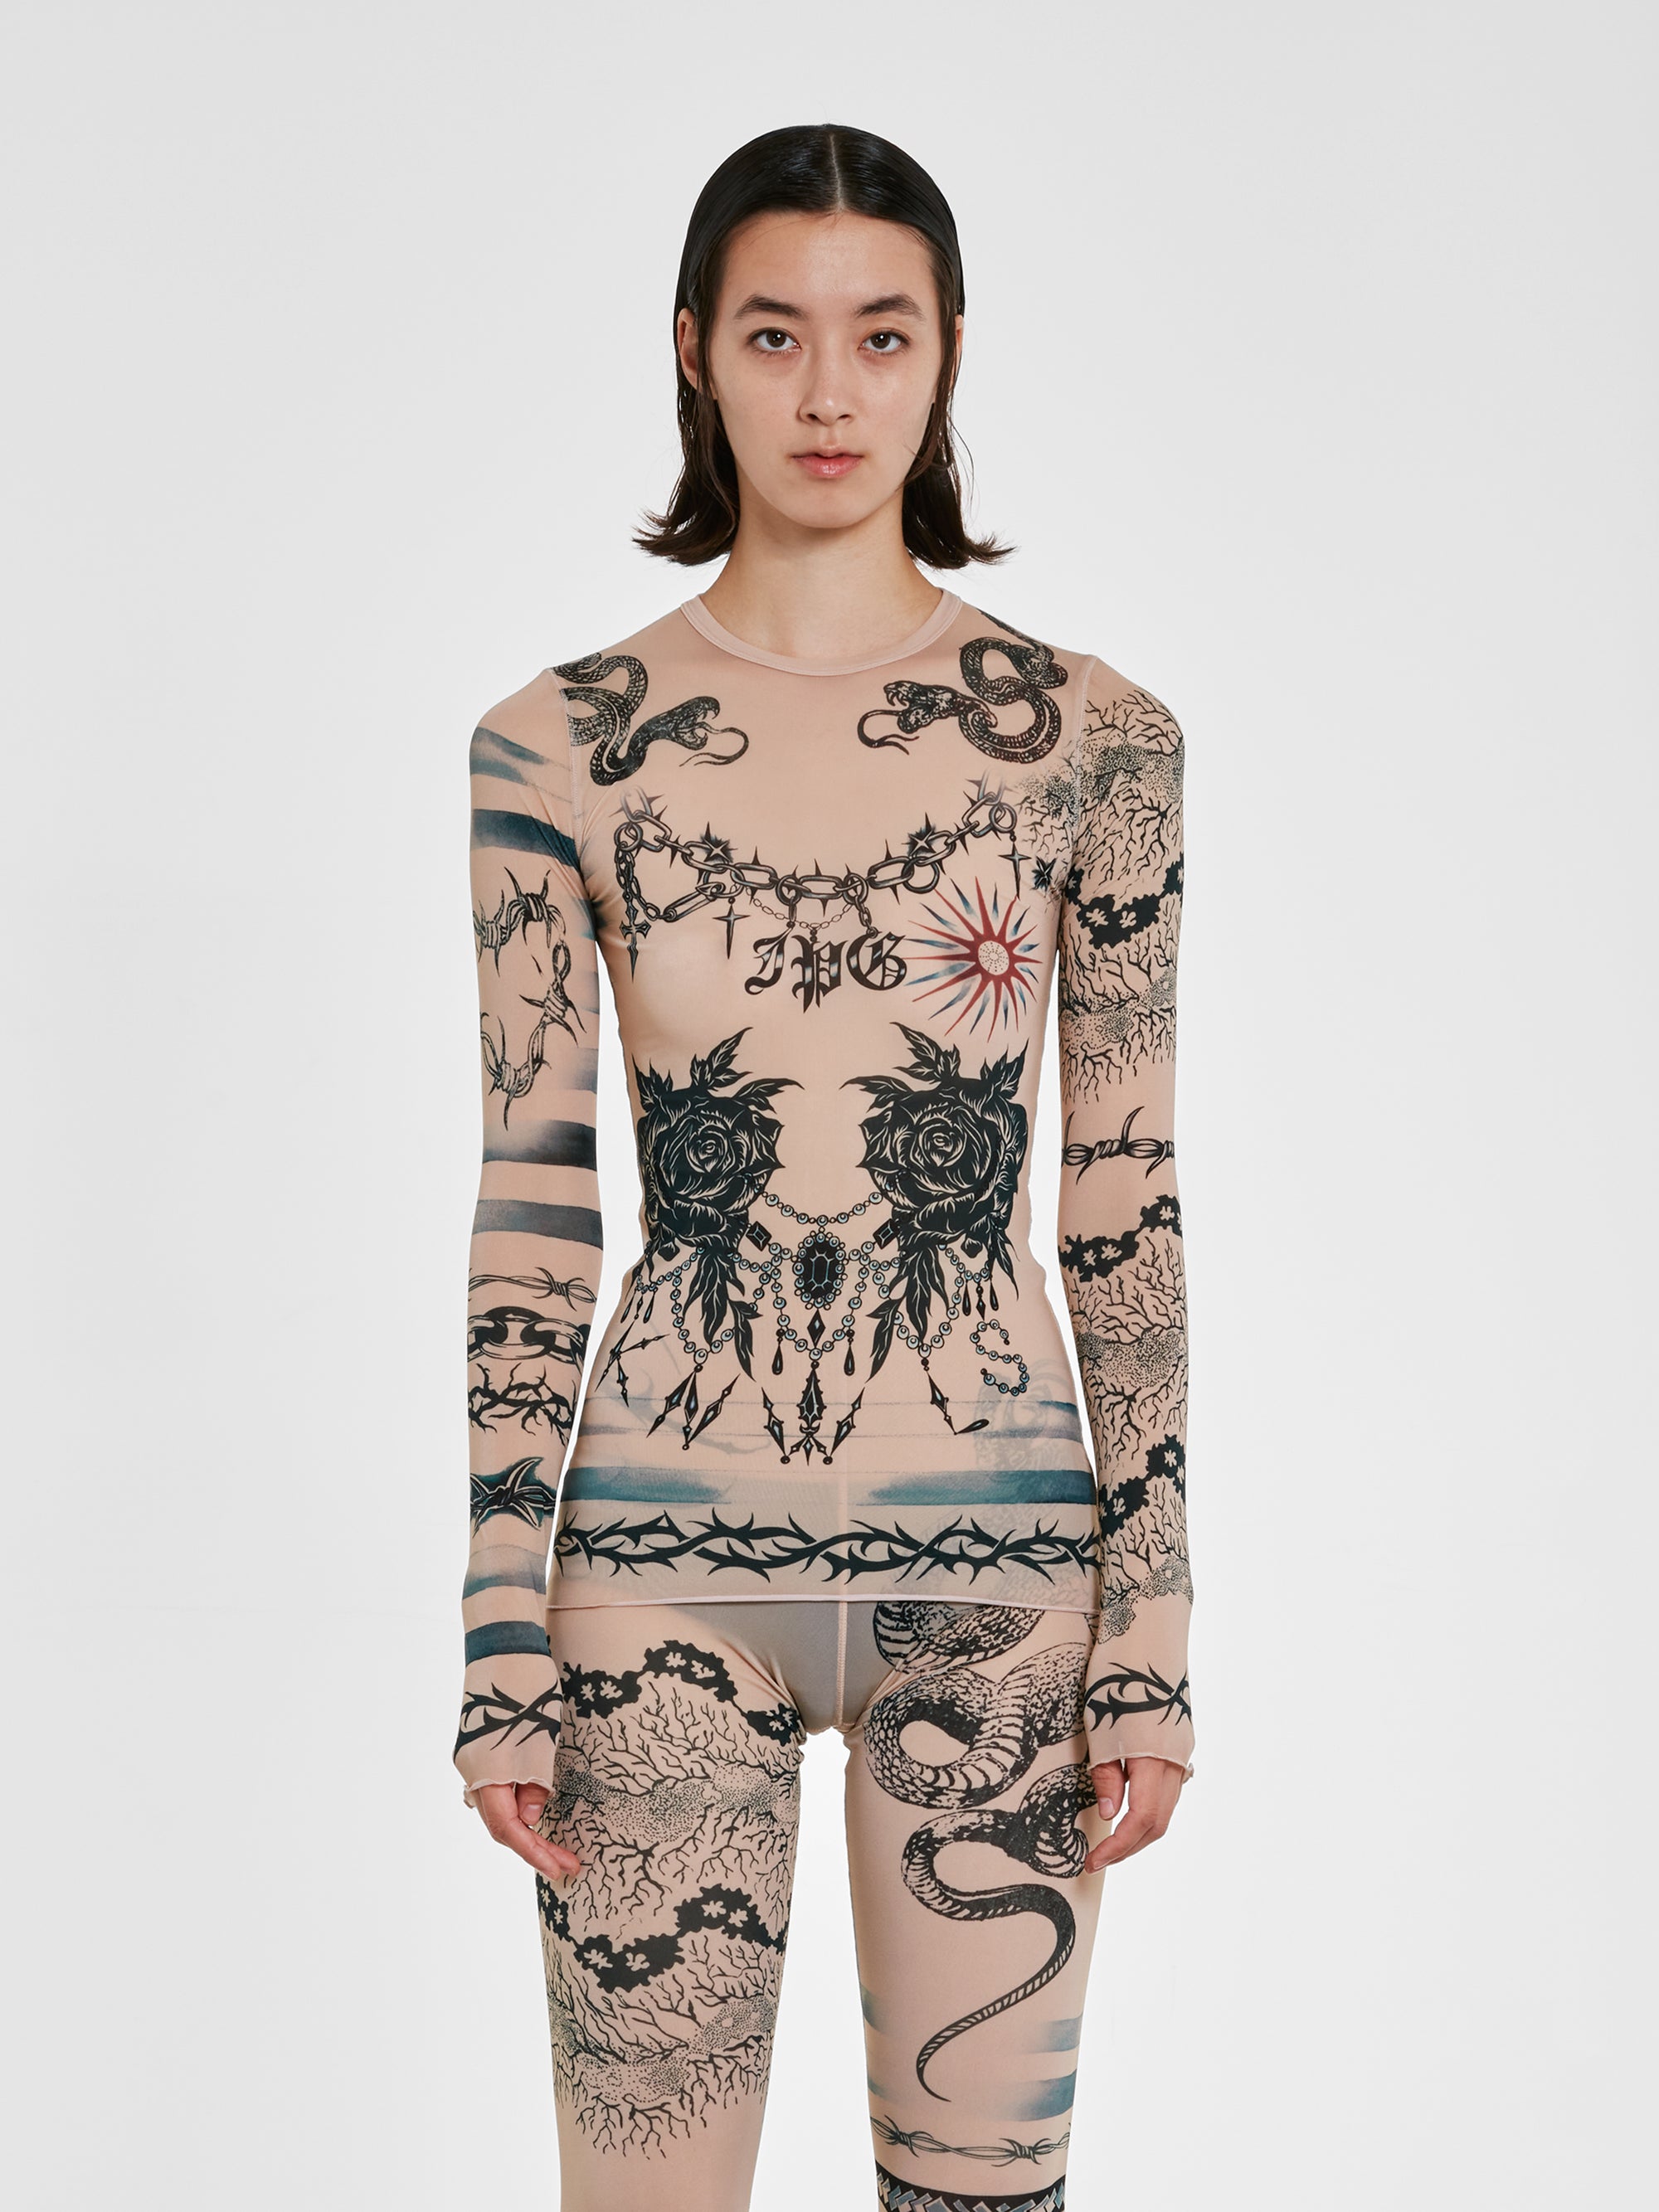 Jean Paul Gaultier - KNWLS Women’s Trompe L’Oeil Tattoo Long Sleeve Top - (Nude/Grey/Black) view 2